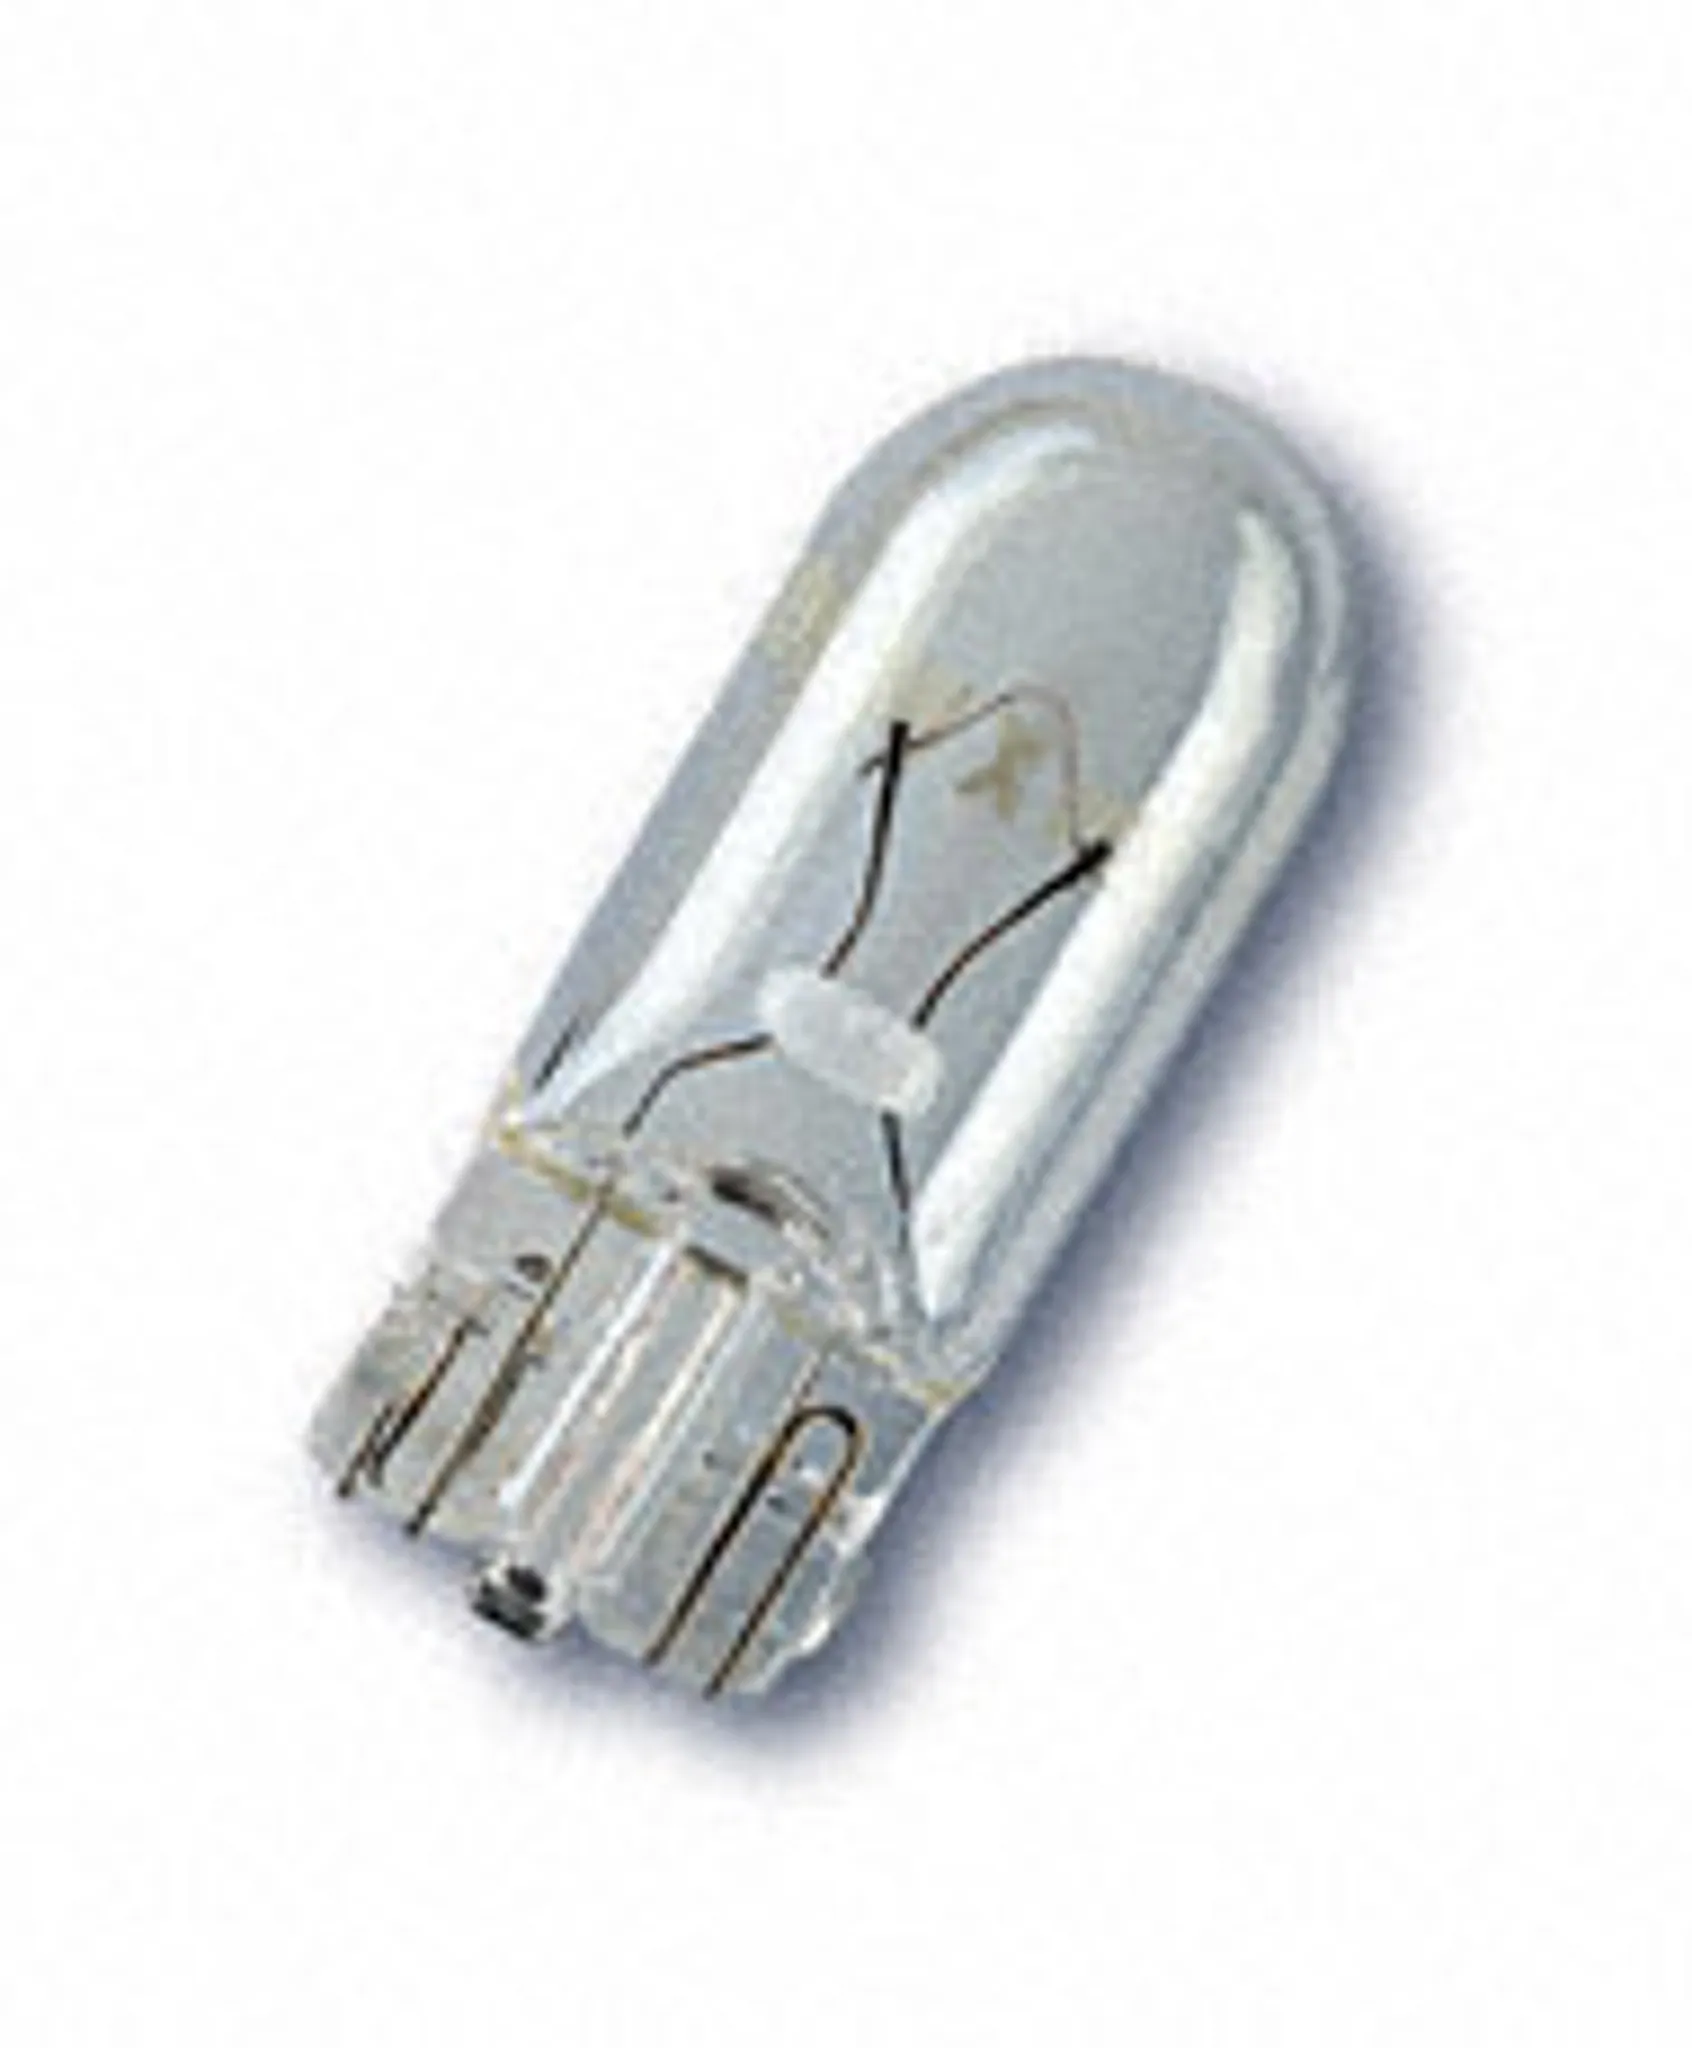 Auto-Lampen-Discount - H7 Lampen und mehr günstig kaufen - 10x OSRAM  Glassockellampe W5W Standlicht 12V 5W 2825